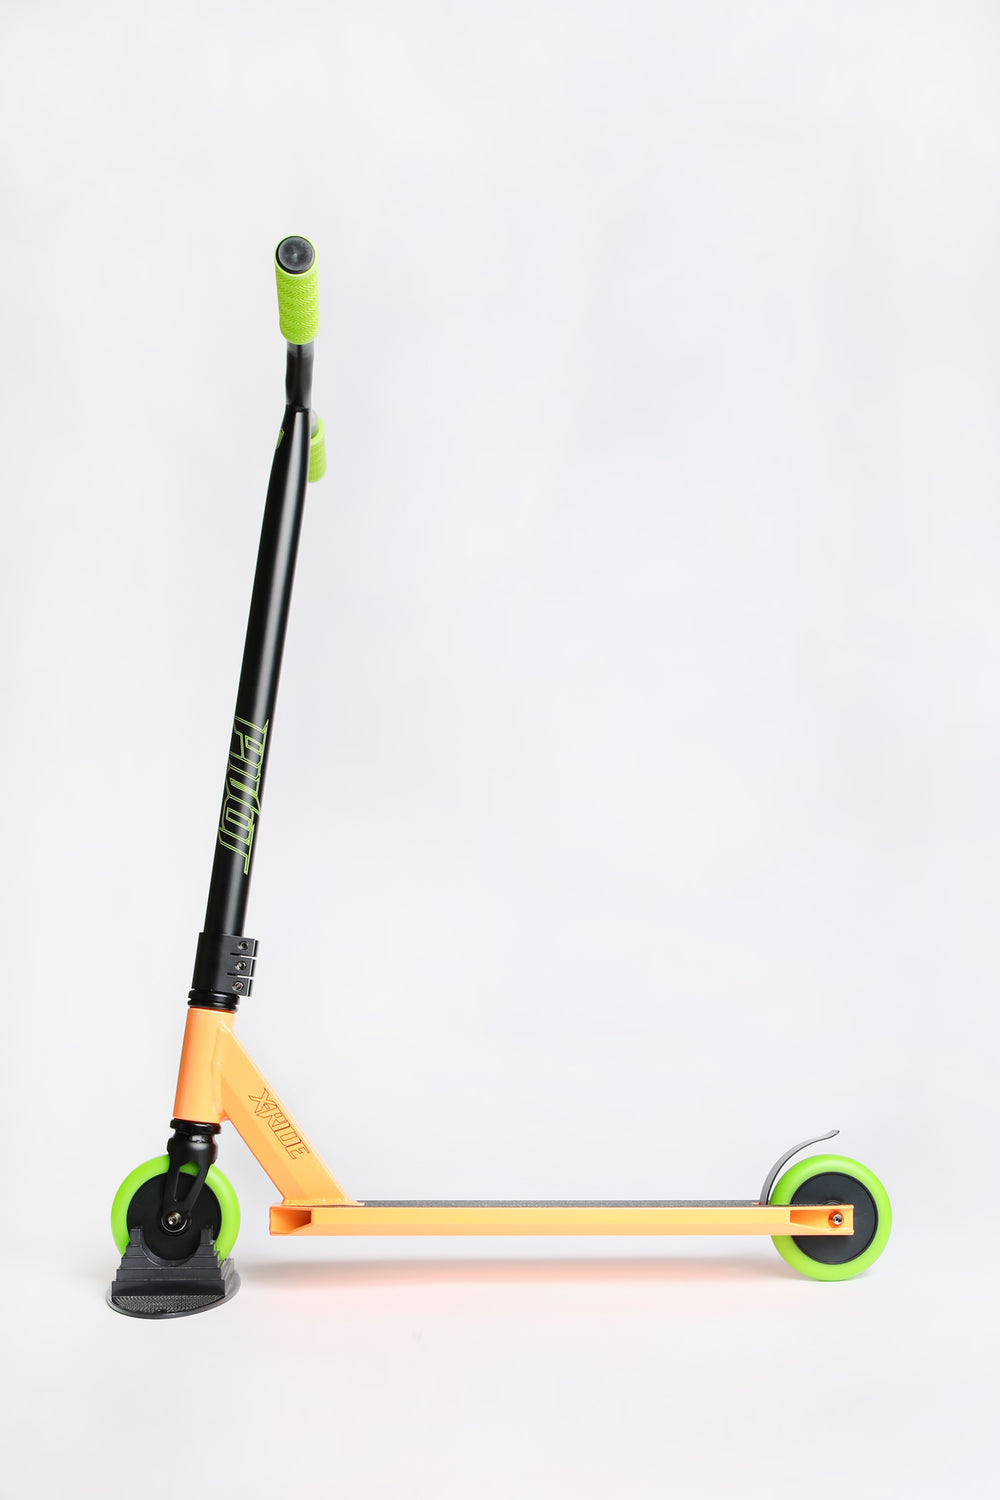 Pivot X-Ride Orange and Green Scooter Pivot X-Ride Orange and Green Scooter